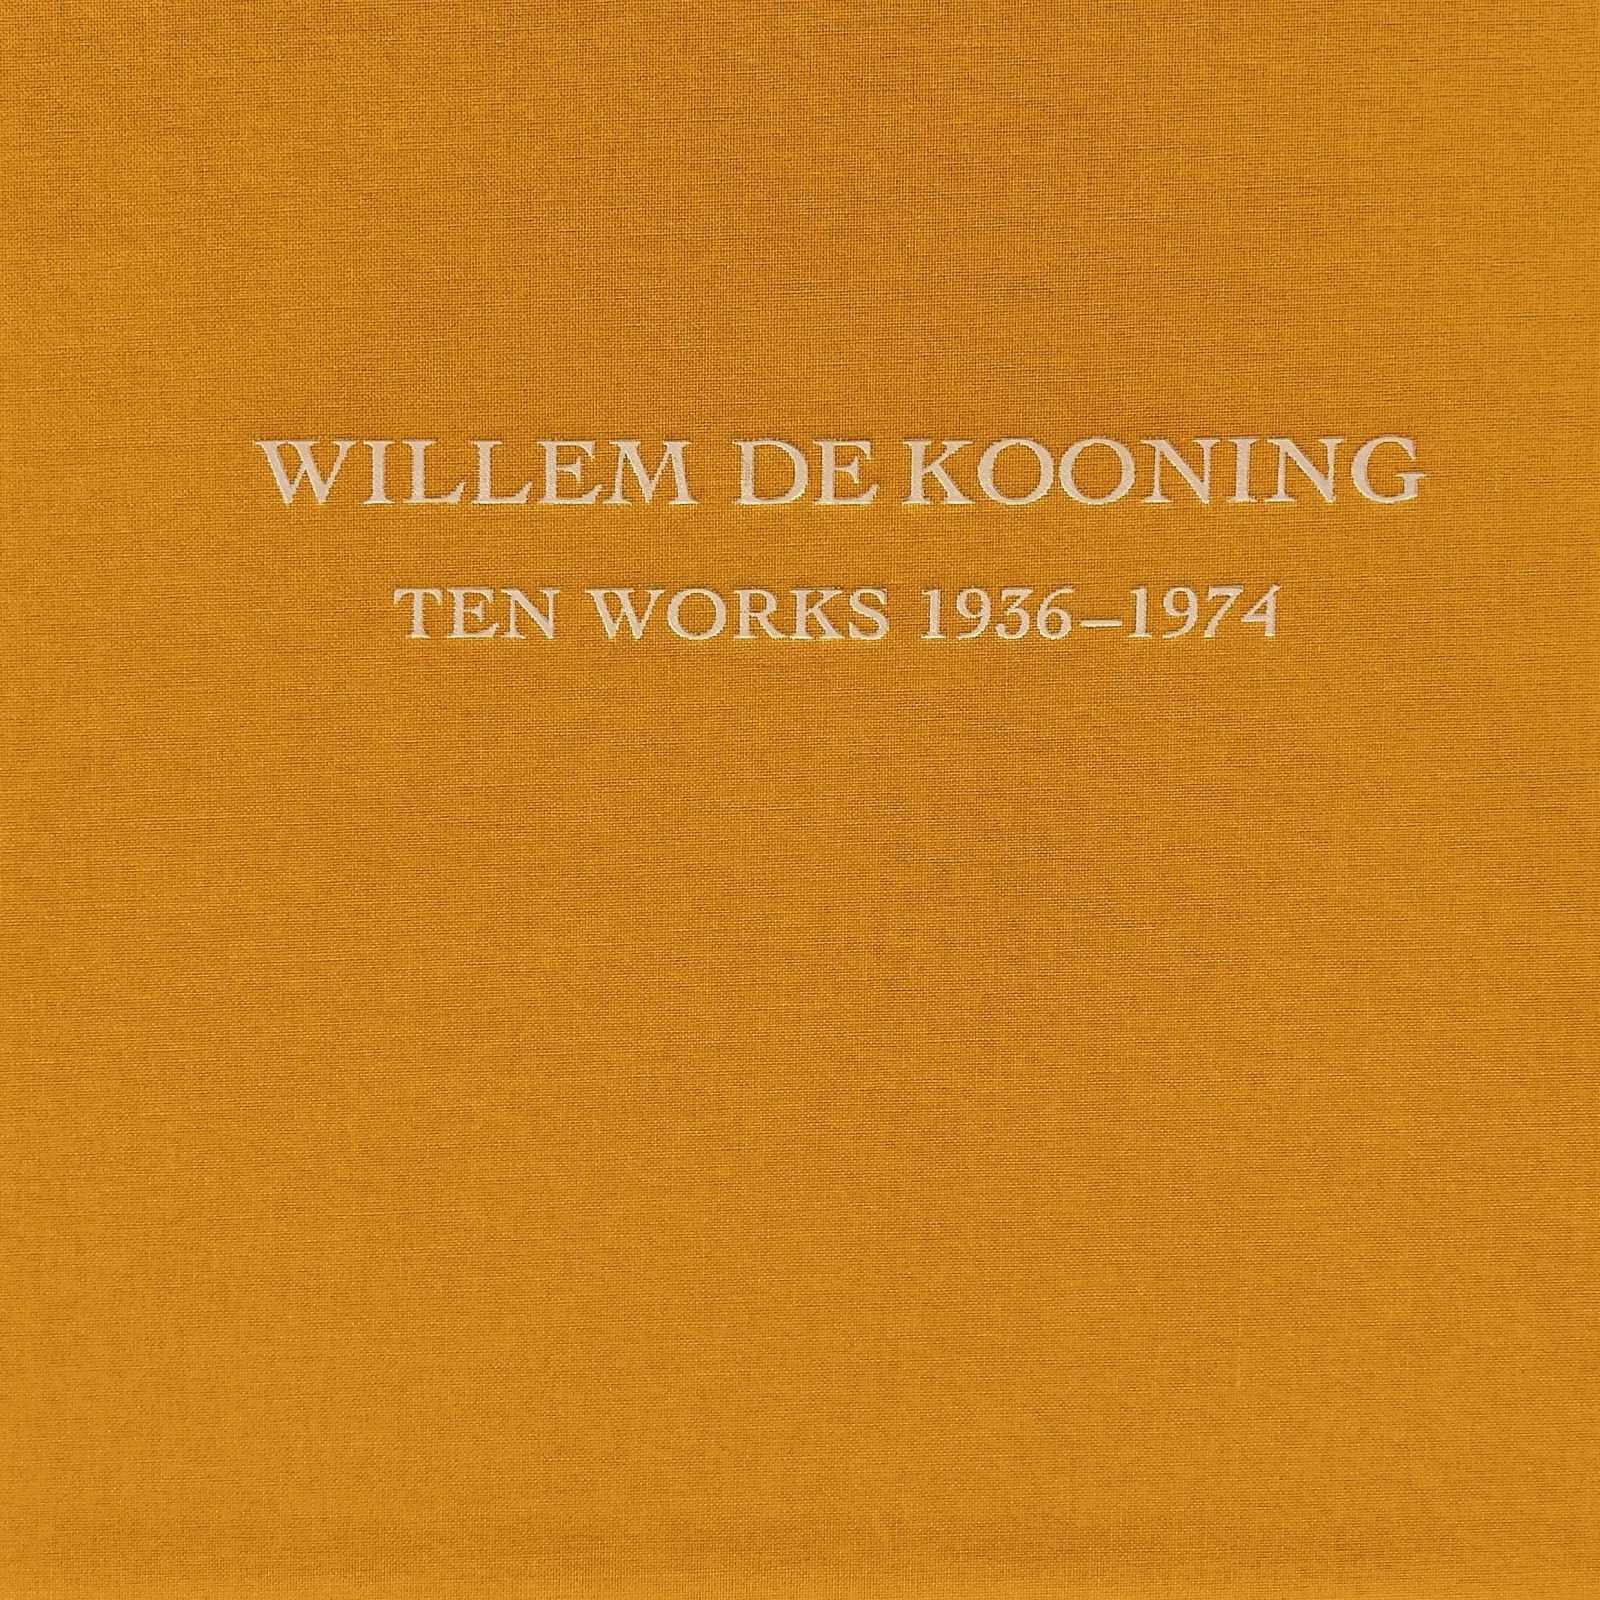 Willem de Kooning: Ten Works 1936–1974 - 2005 - Publications - Paul Thiebaud Gallery